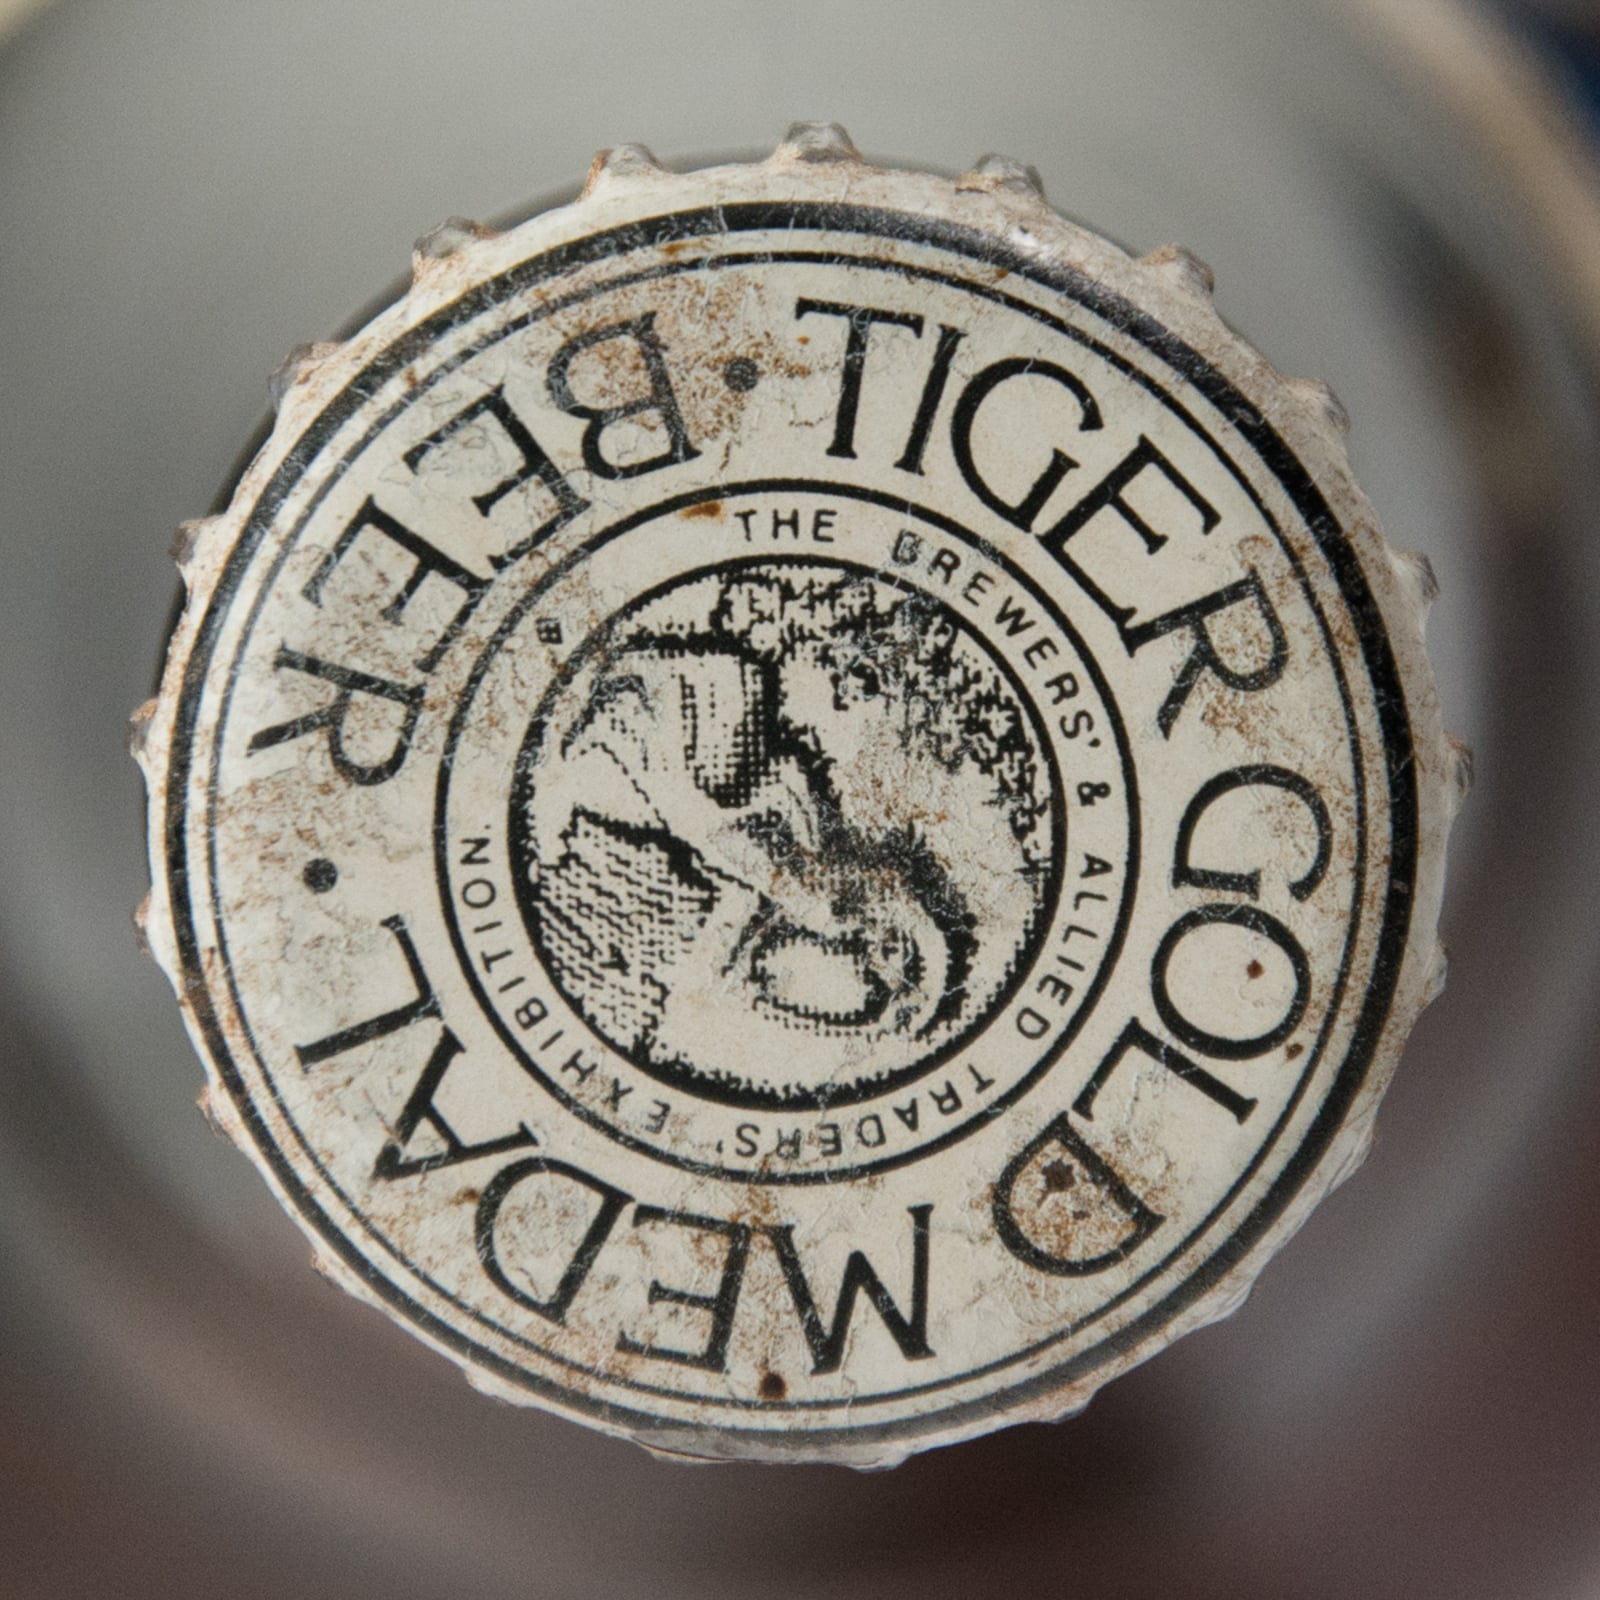 Tiger Gold Medal Lager Beer "Brewers Exhibition - London" Vintage Bottle